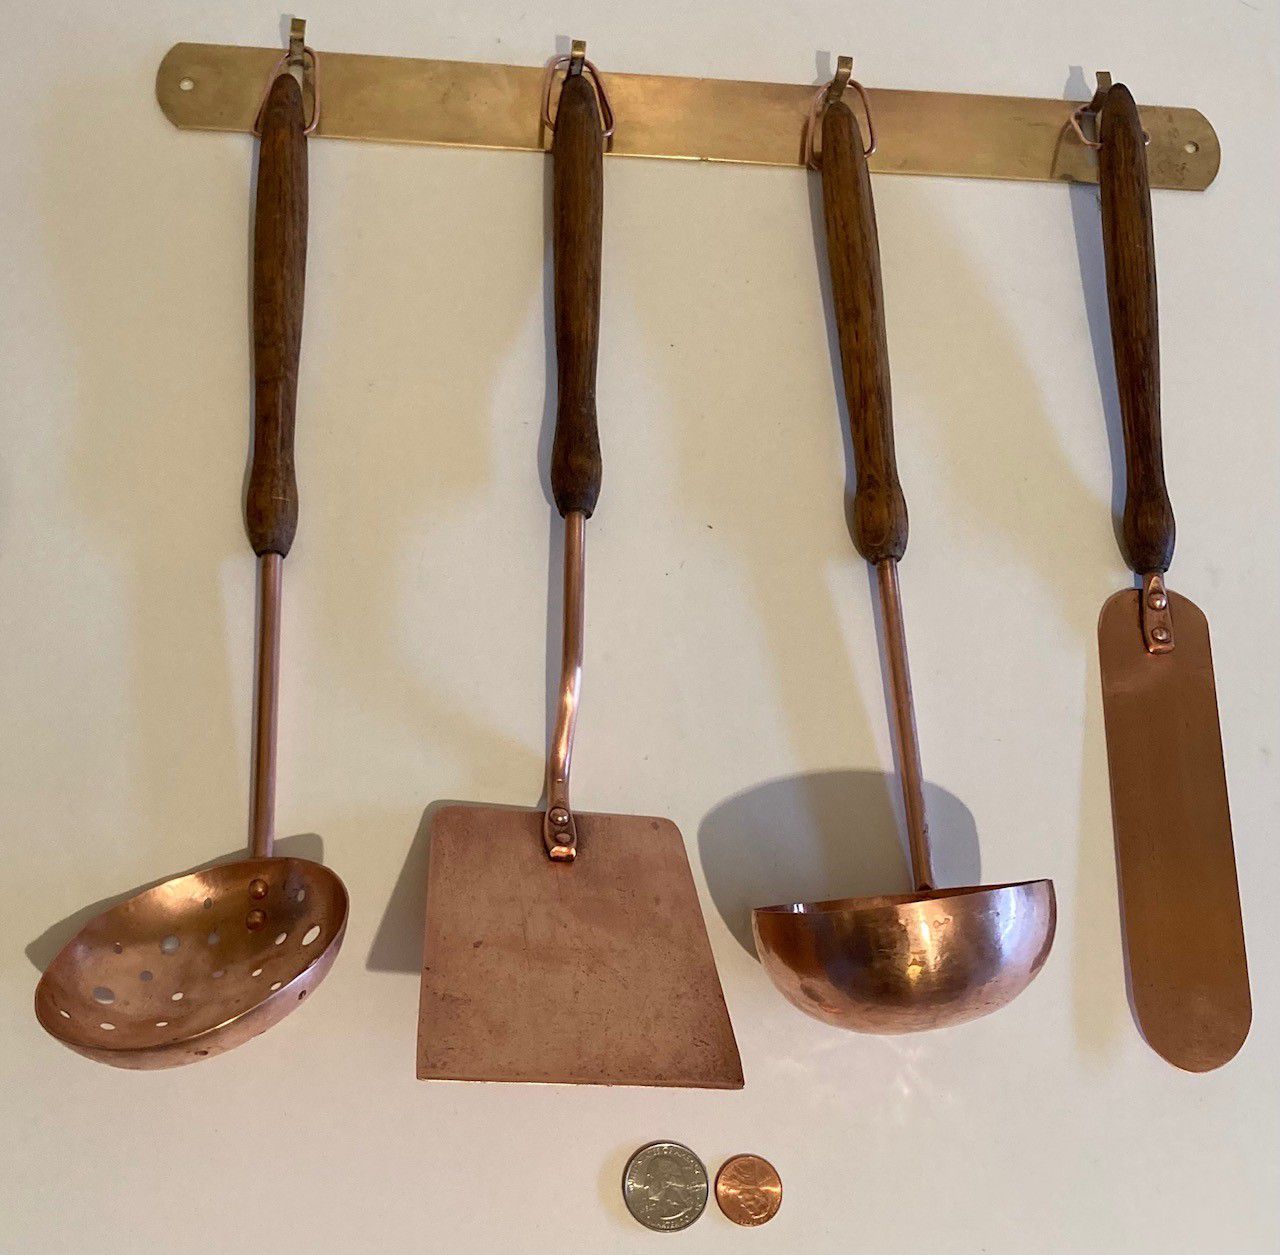 Vintage 5 Piece Set of Hanging Copper and Wood Serving Utensils, Spatula, Laddle, Strainer, Spreader, Brass Hanging Bar Holder, 14" Wide Brass Bar